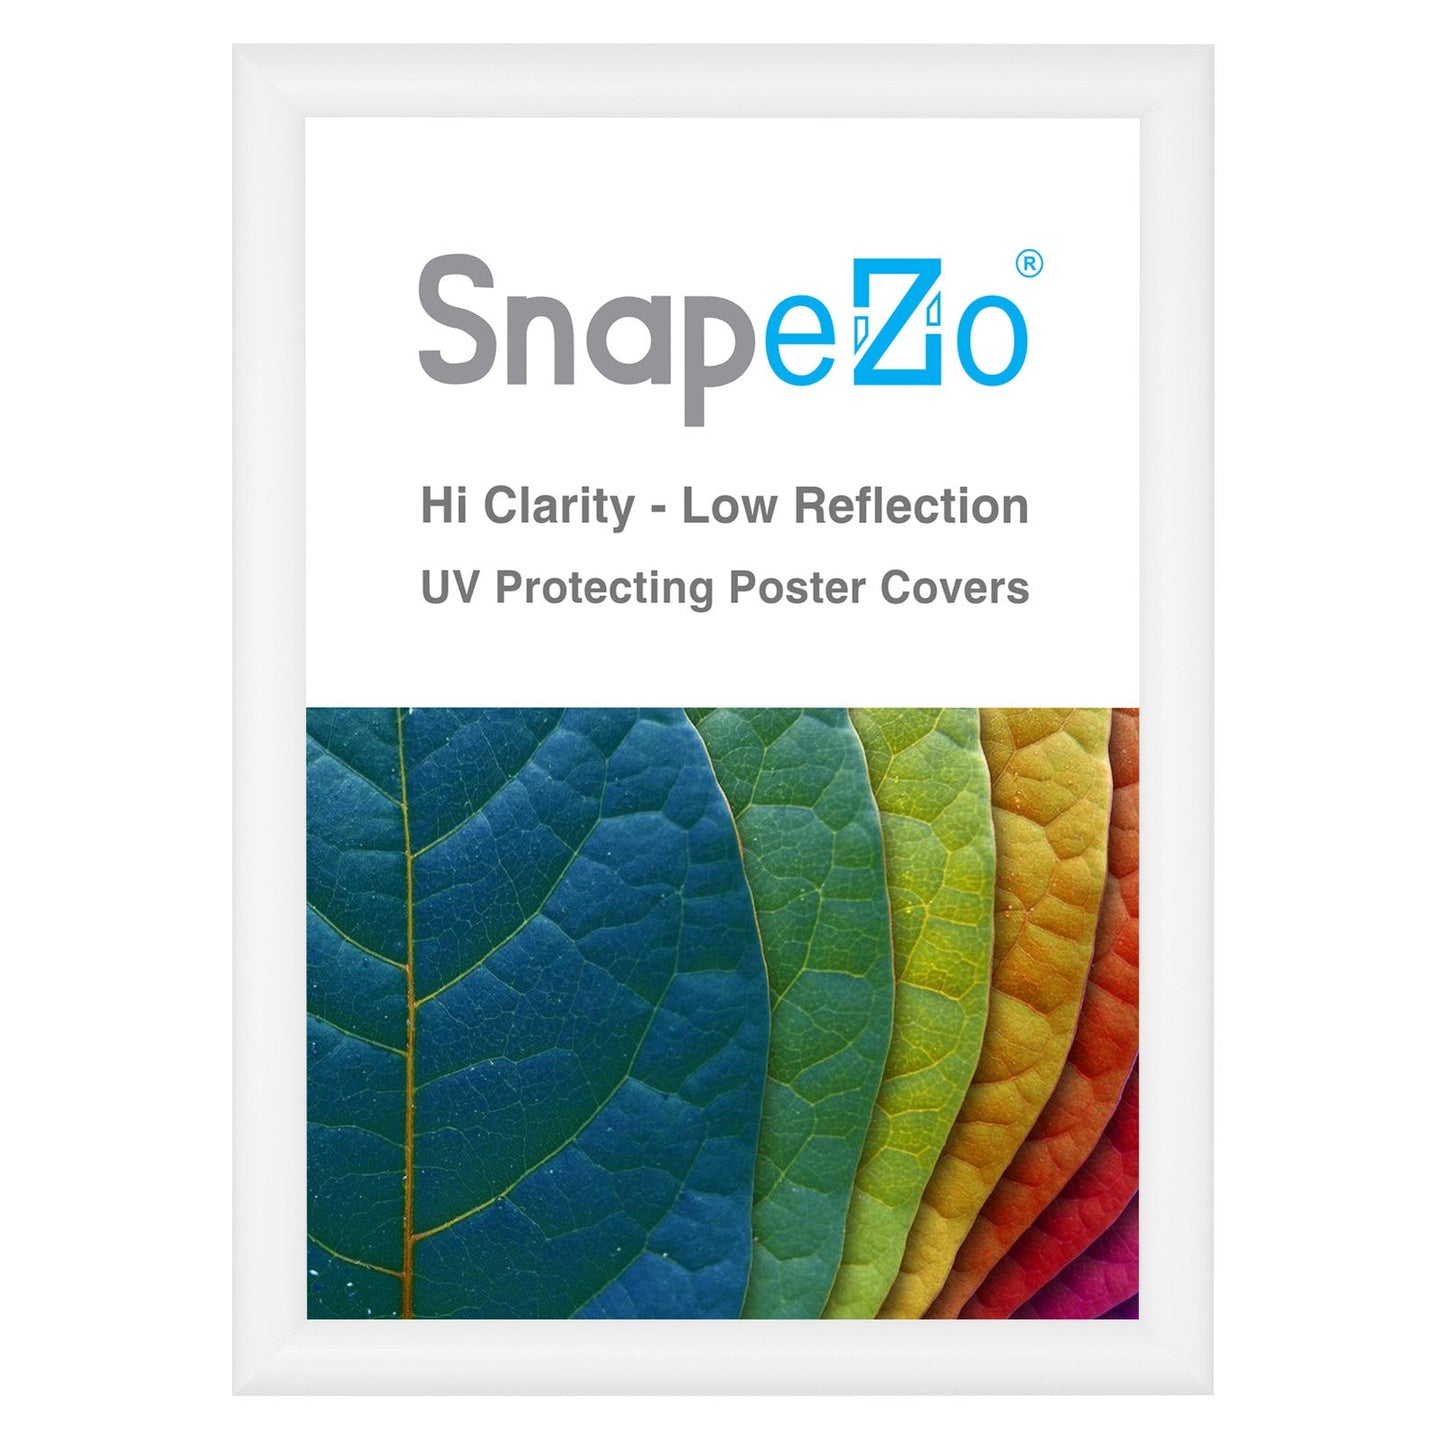 A3 White SnapeZo® Snap Frame - 1" Profile